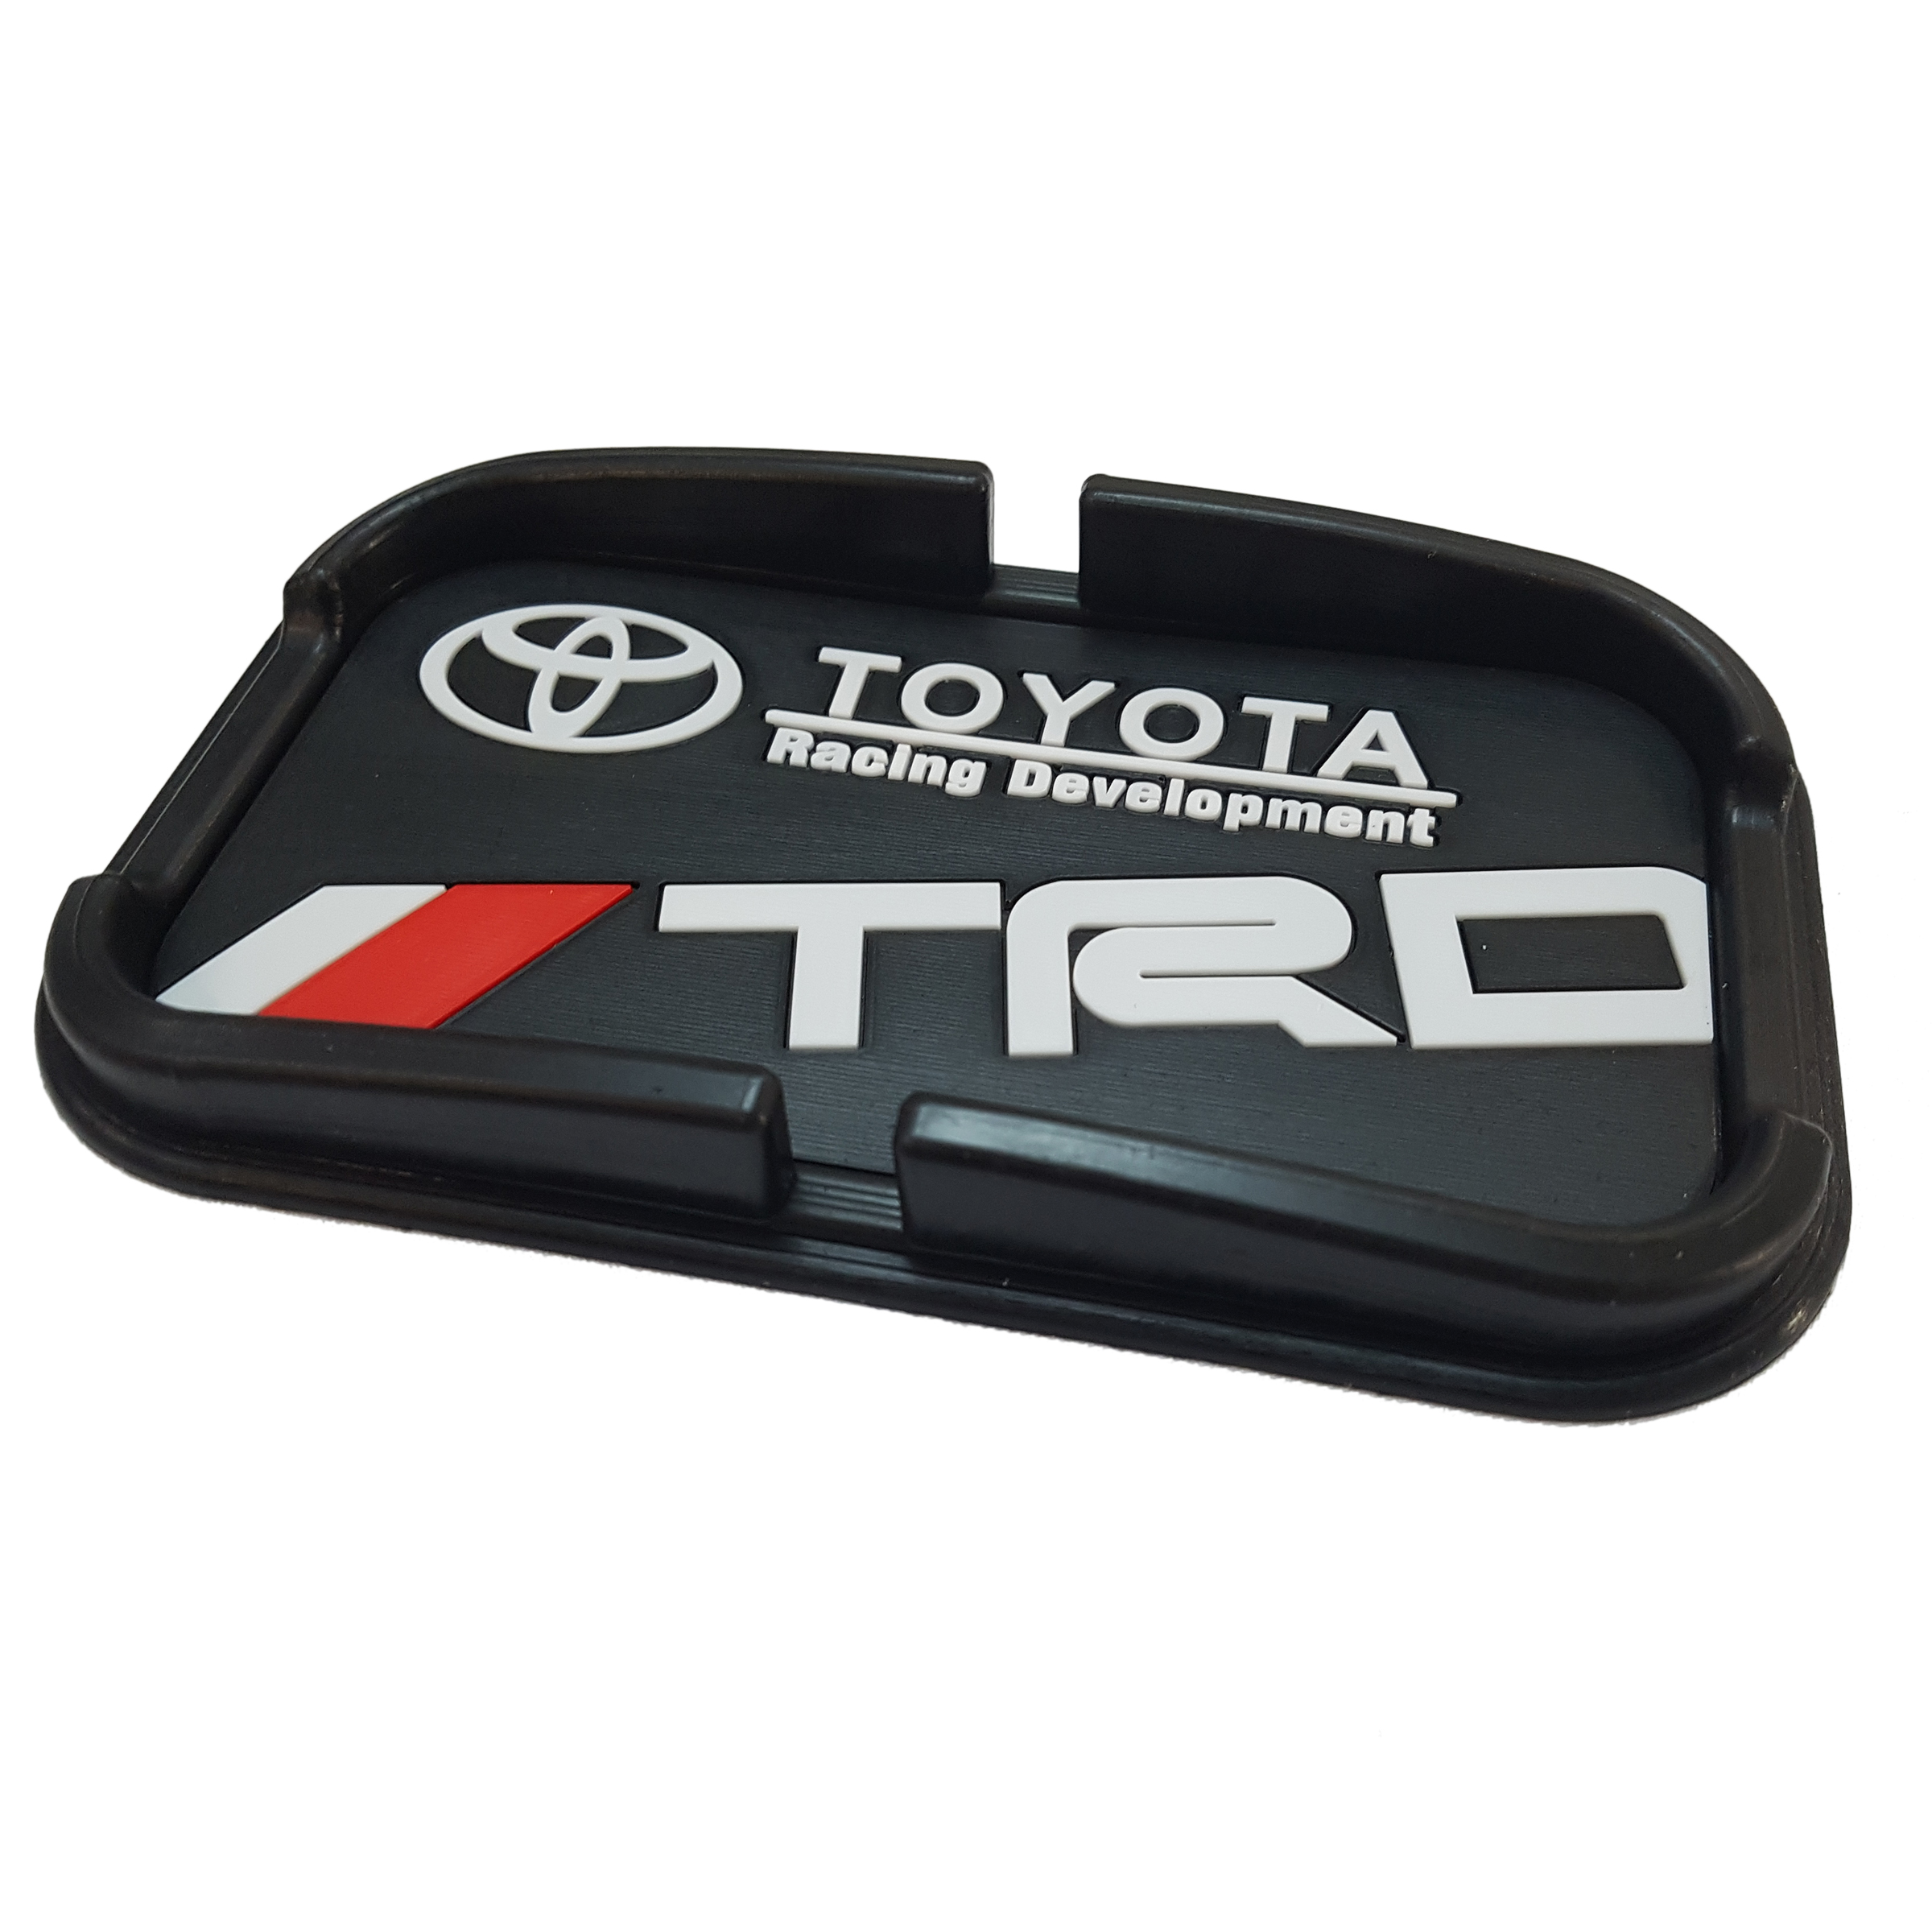 پد نگهدارنده اشیاء داخل خودرو کد Toyo18